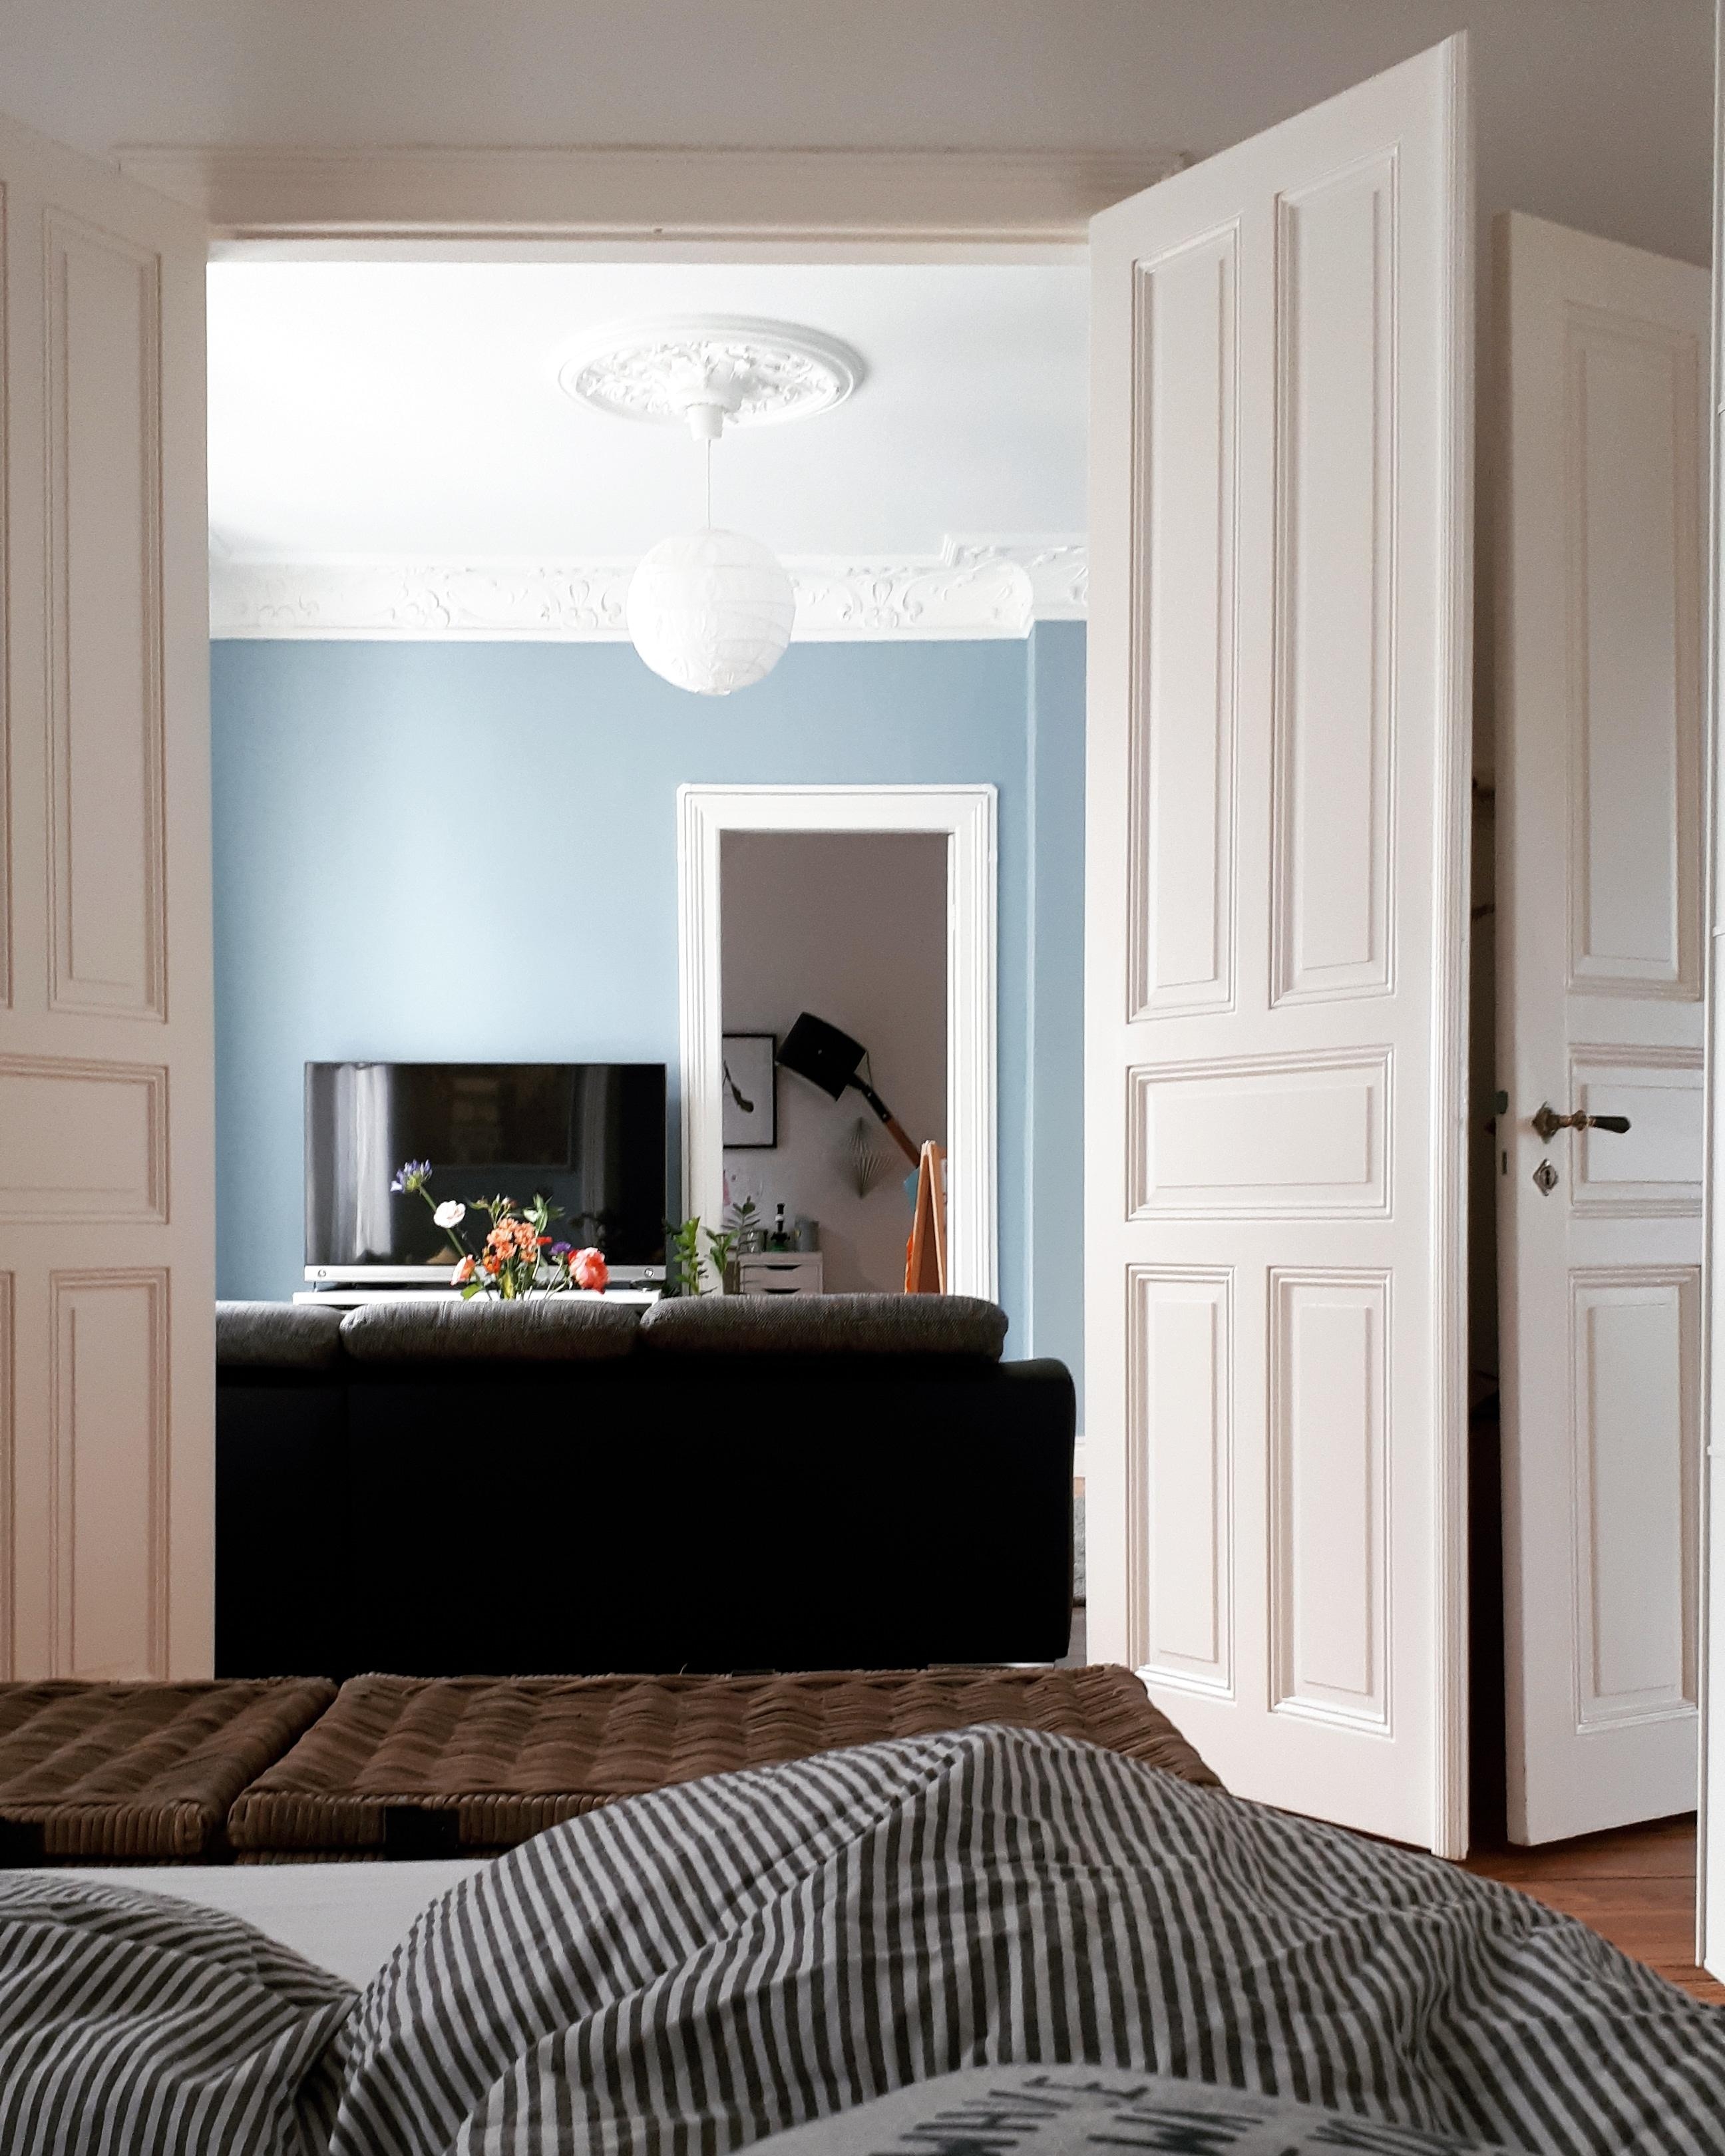 Guten Morgen 
#wohnzimmer #schlafzimmer #durchblick #arbeitszimmer #altbau #altbauliebe #stuck #blauewand